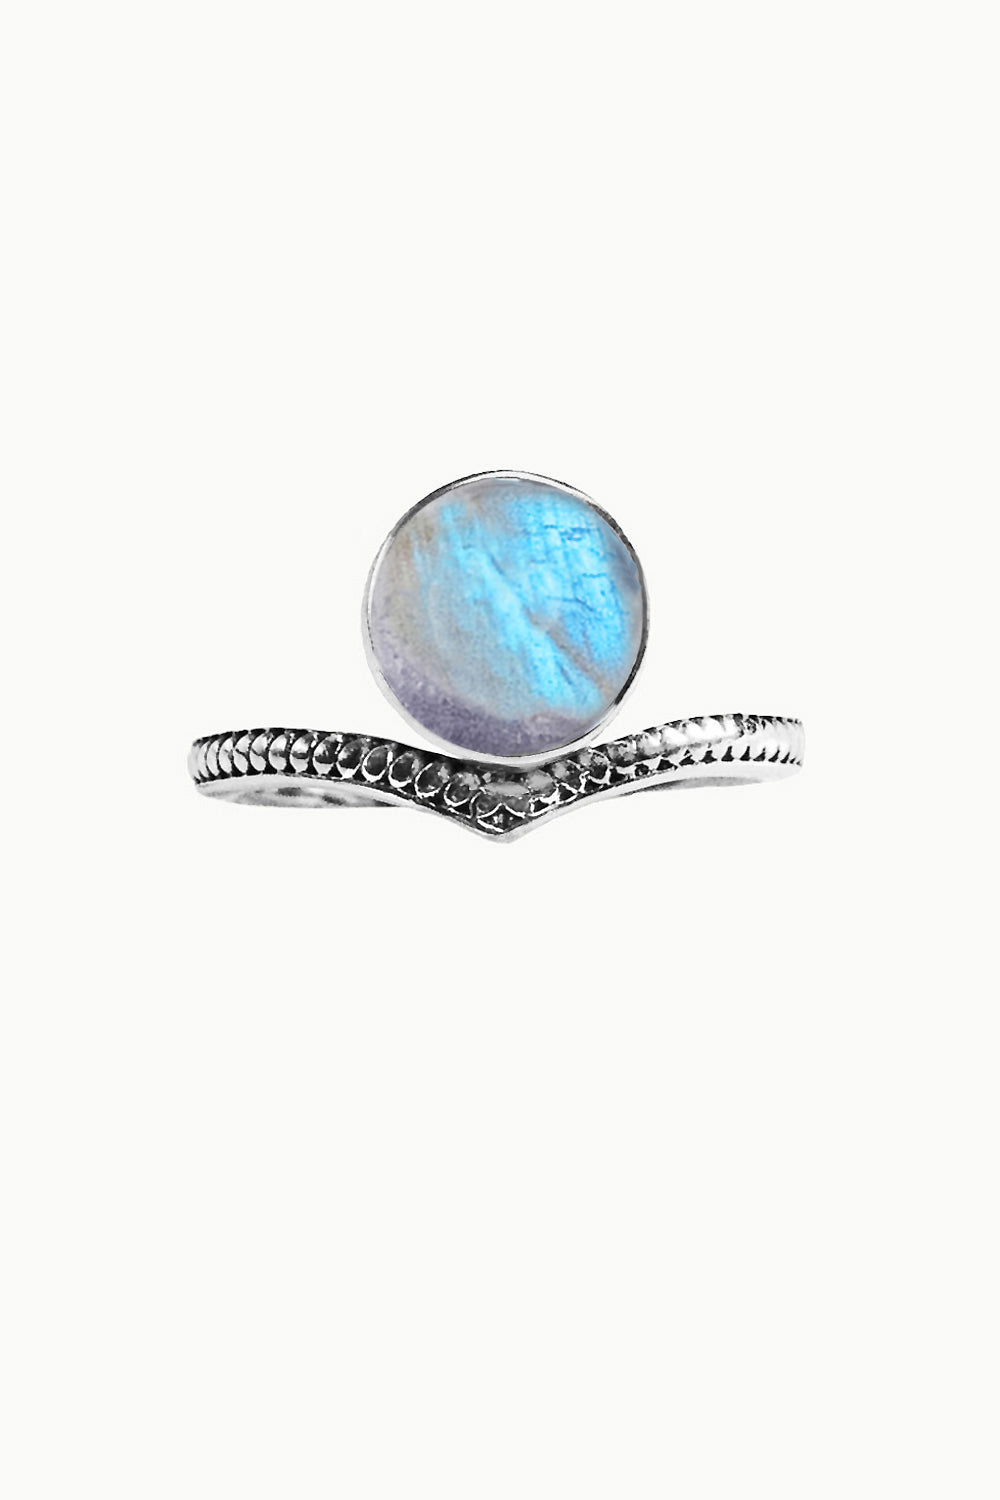 Moonstone Tiara Ring - Nymph